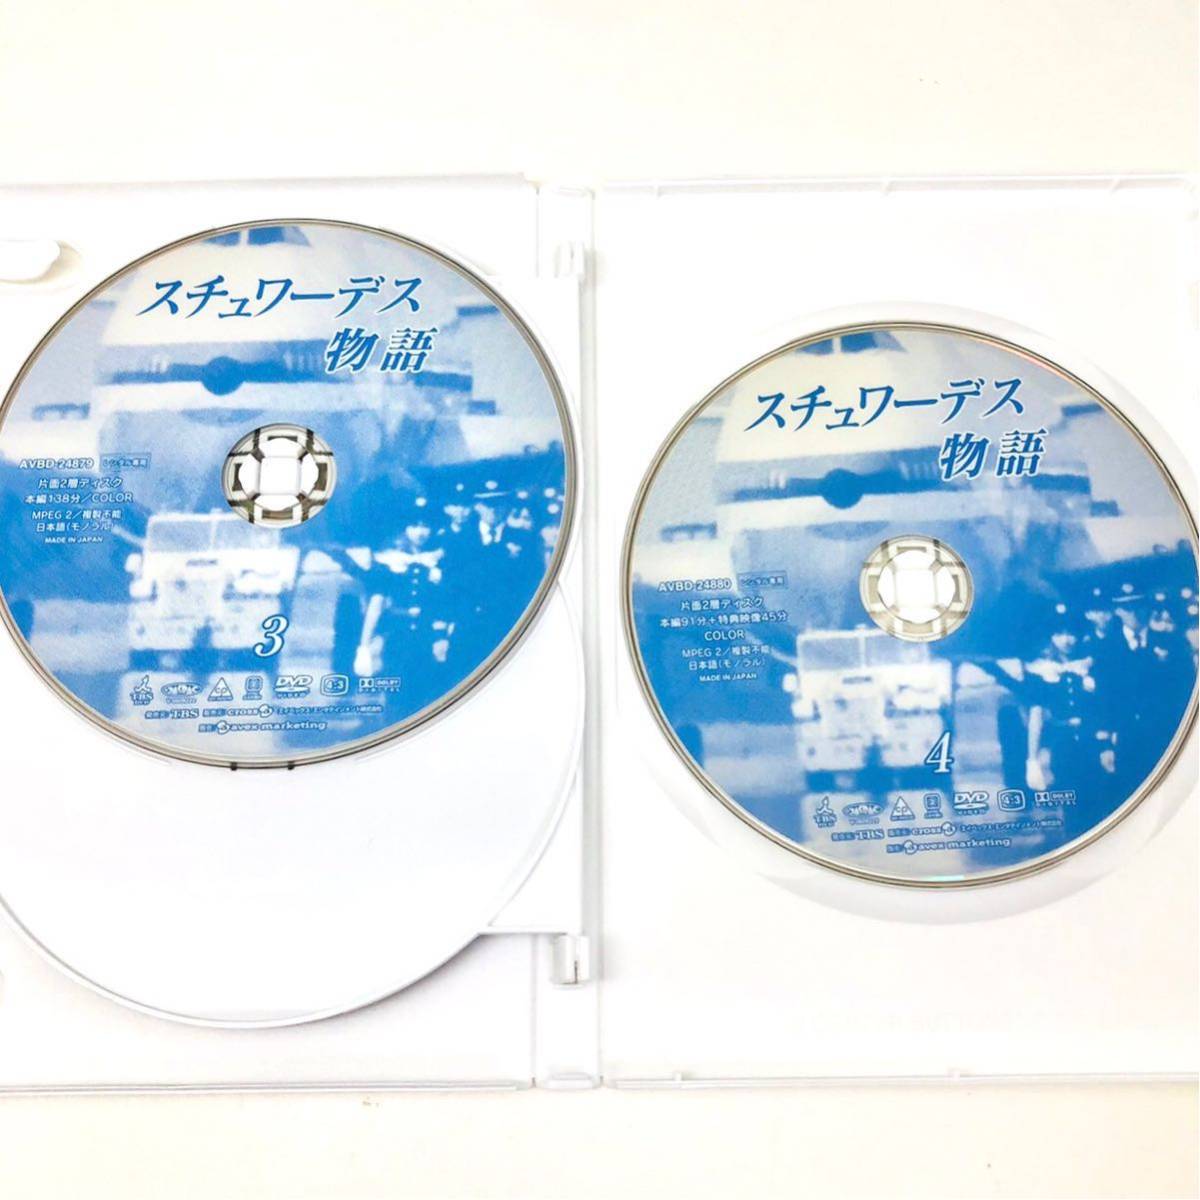 スチュワーデス物語 DVD 全8巻セット レンタル品-